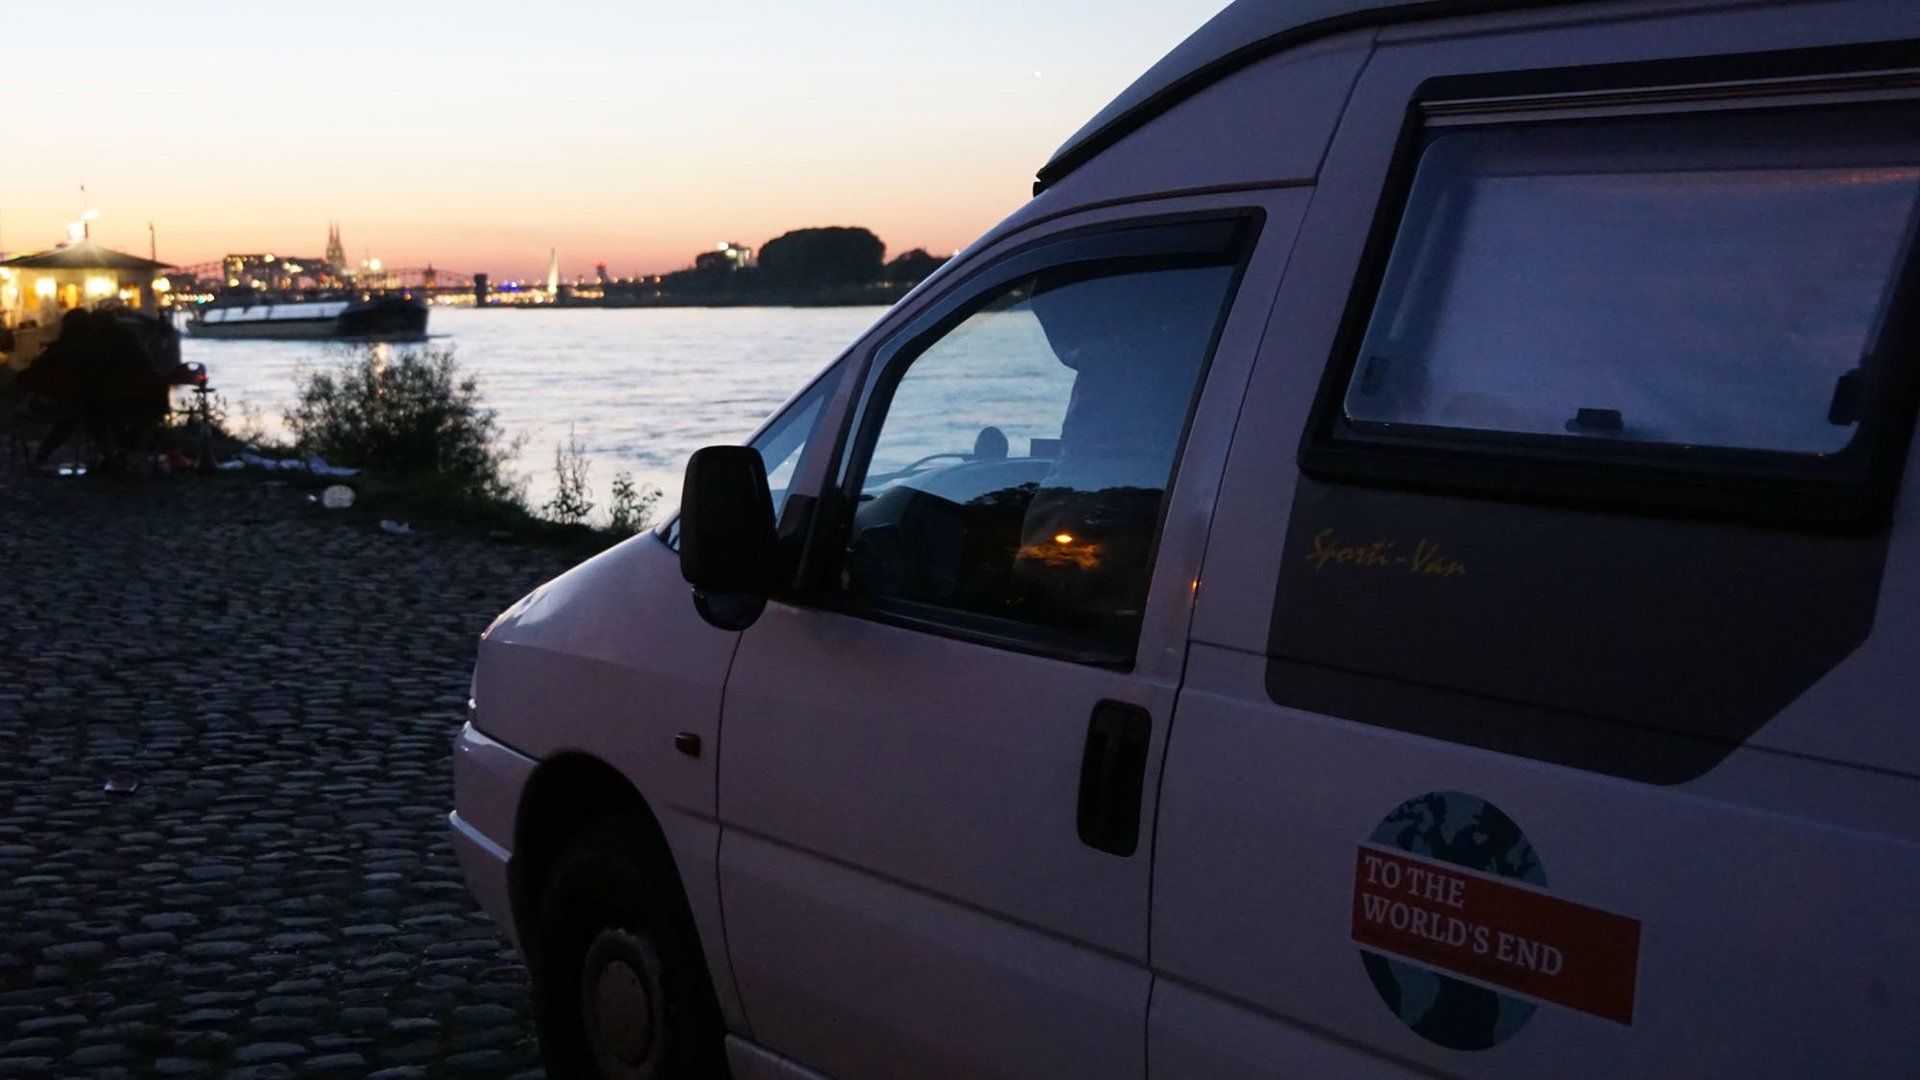 Fiat Scudo Sportivan in Köln, Start einer Weltreise, Strom im Camper, Solarzellen im Van, Reiseblog, To The World's End